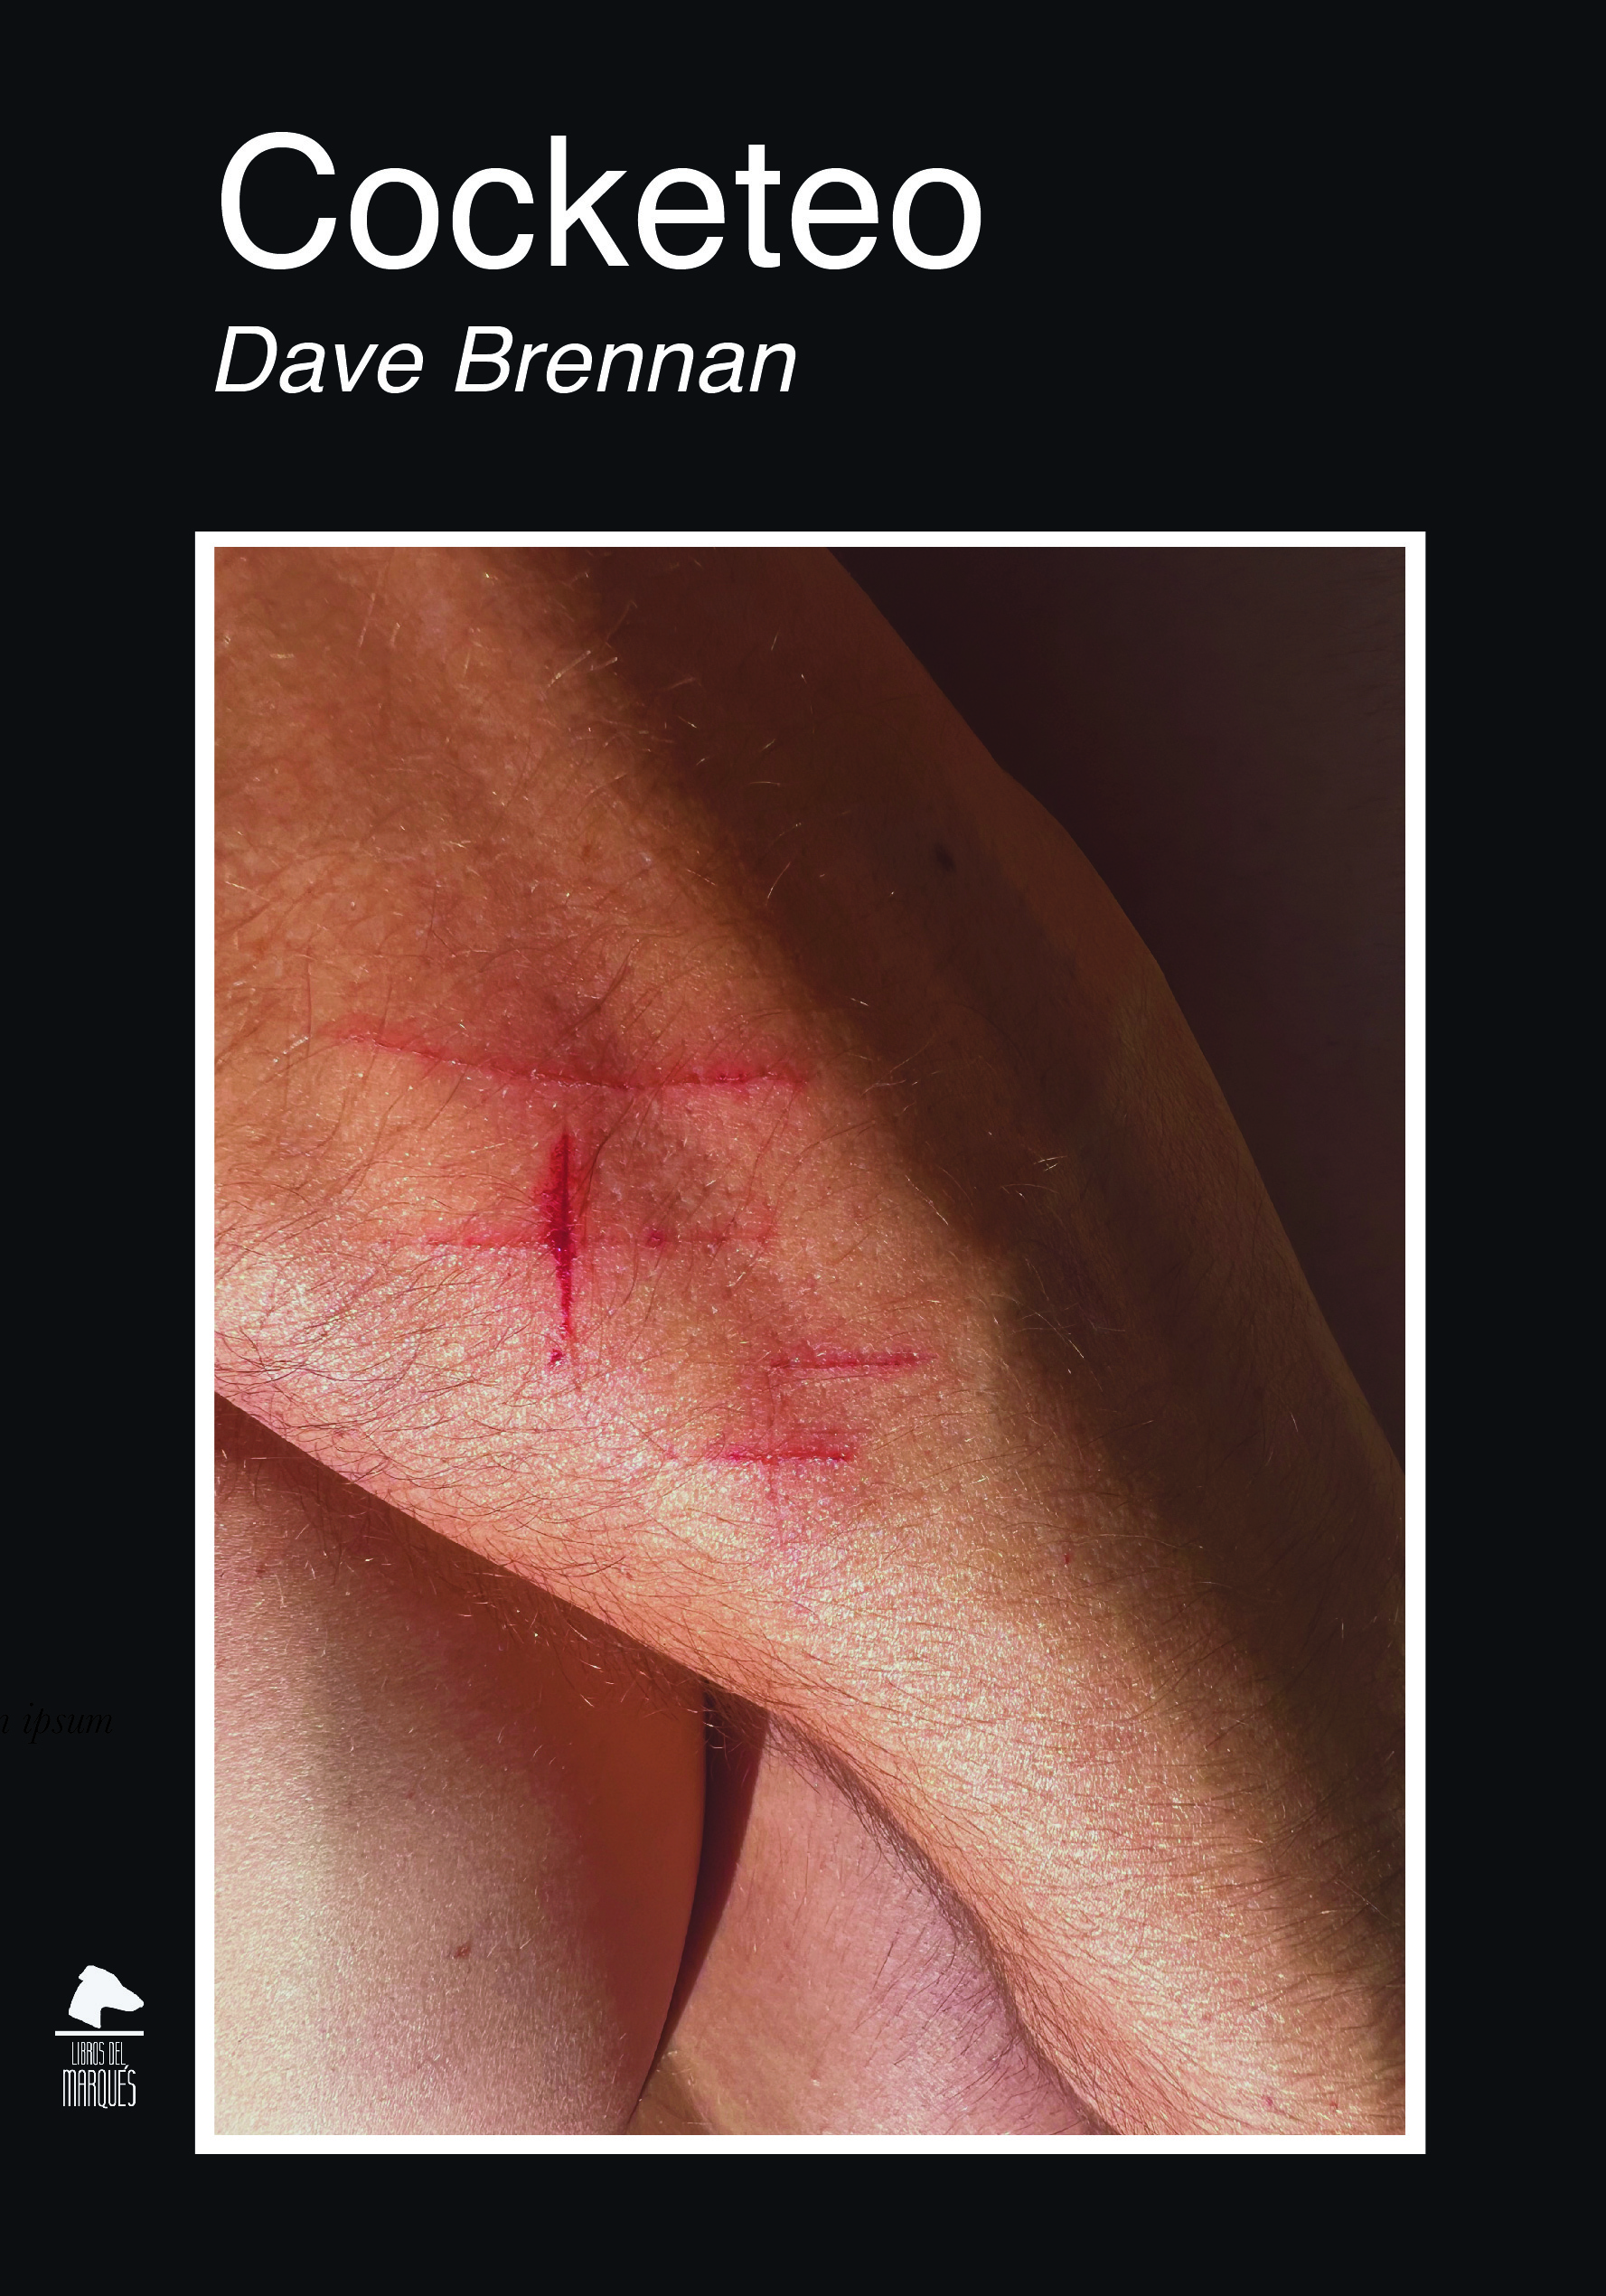 Dave Brennan presentó su segundo libro: Cocketeo